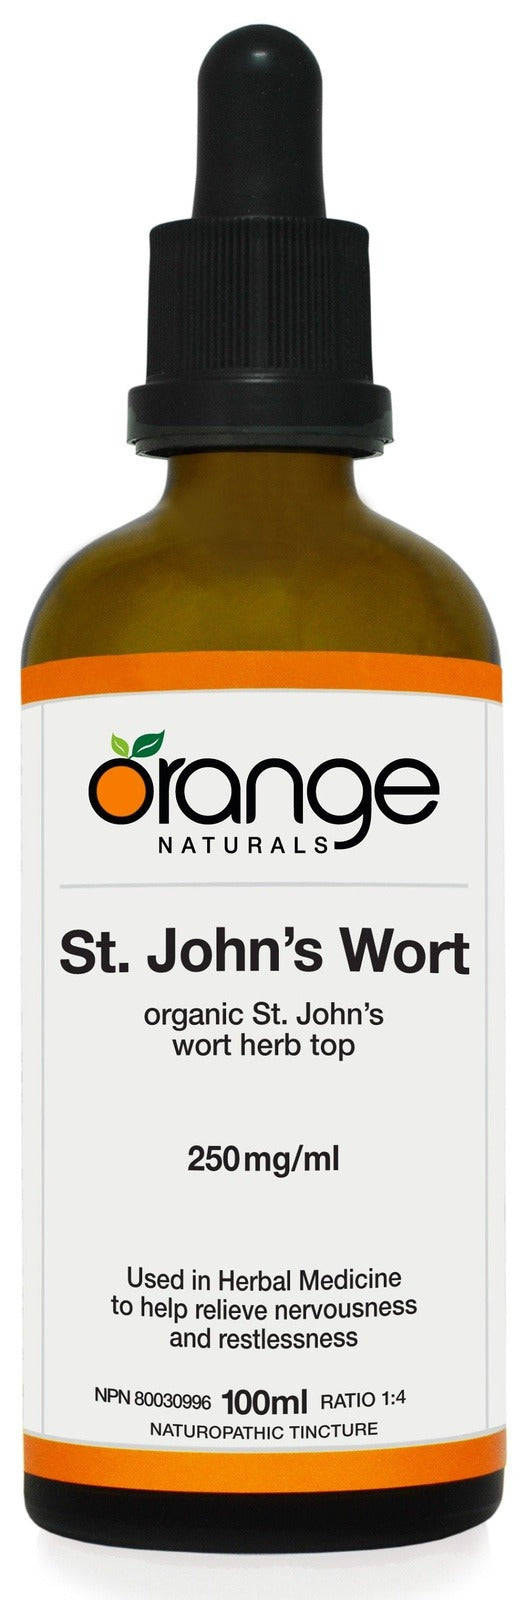 Orange Naturals St. John's Wort 250 mg/mL 100 mL Image 1